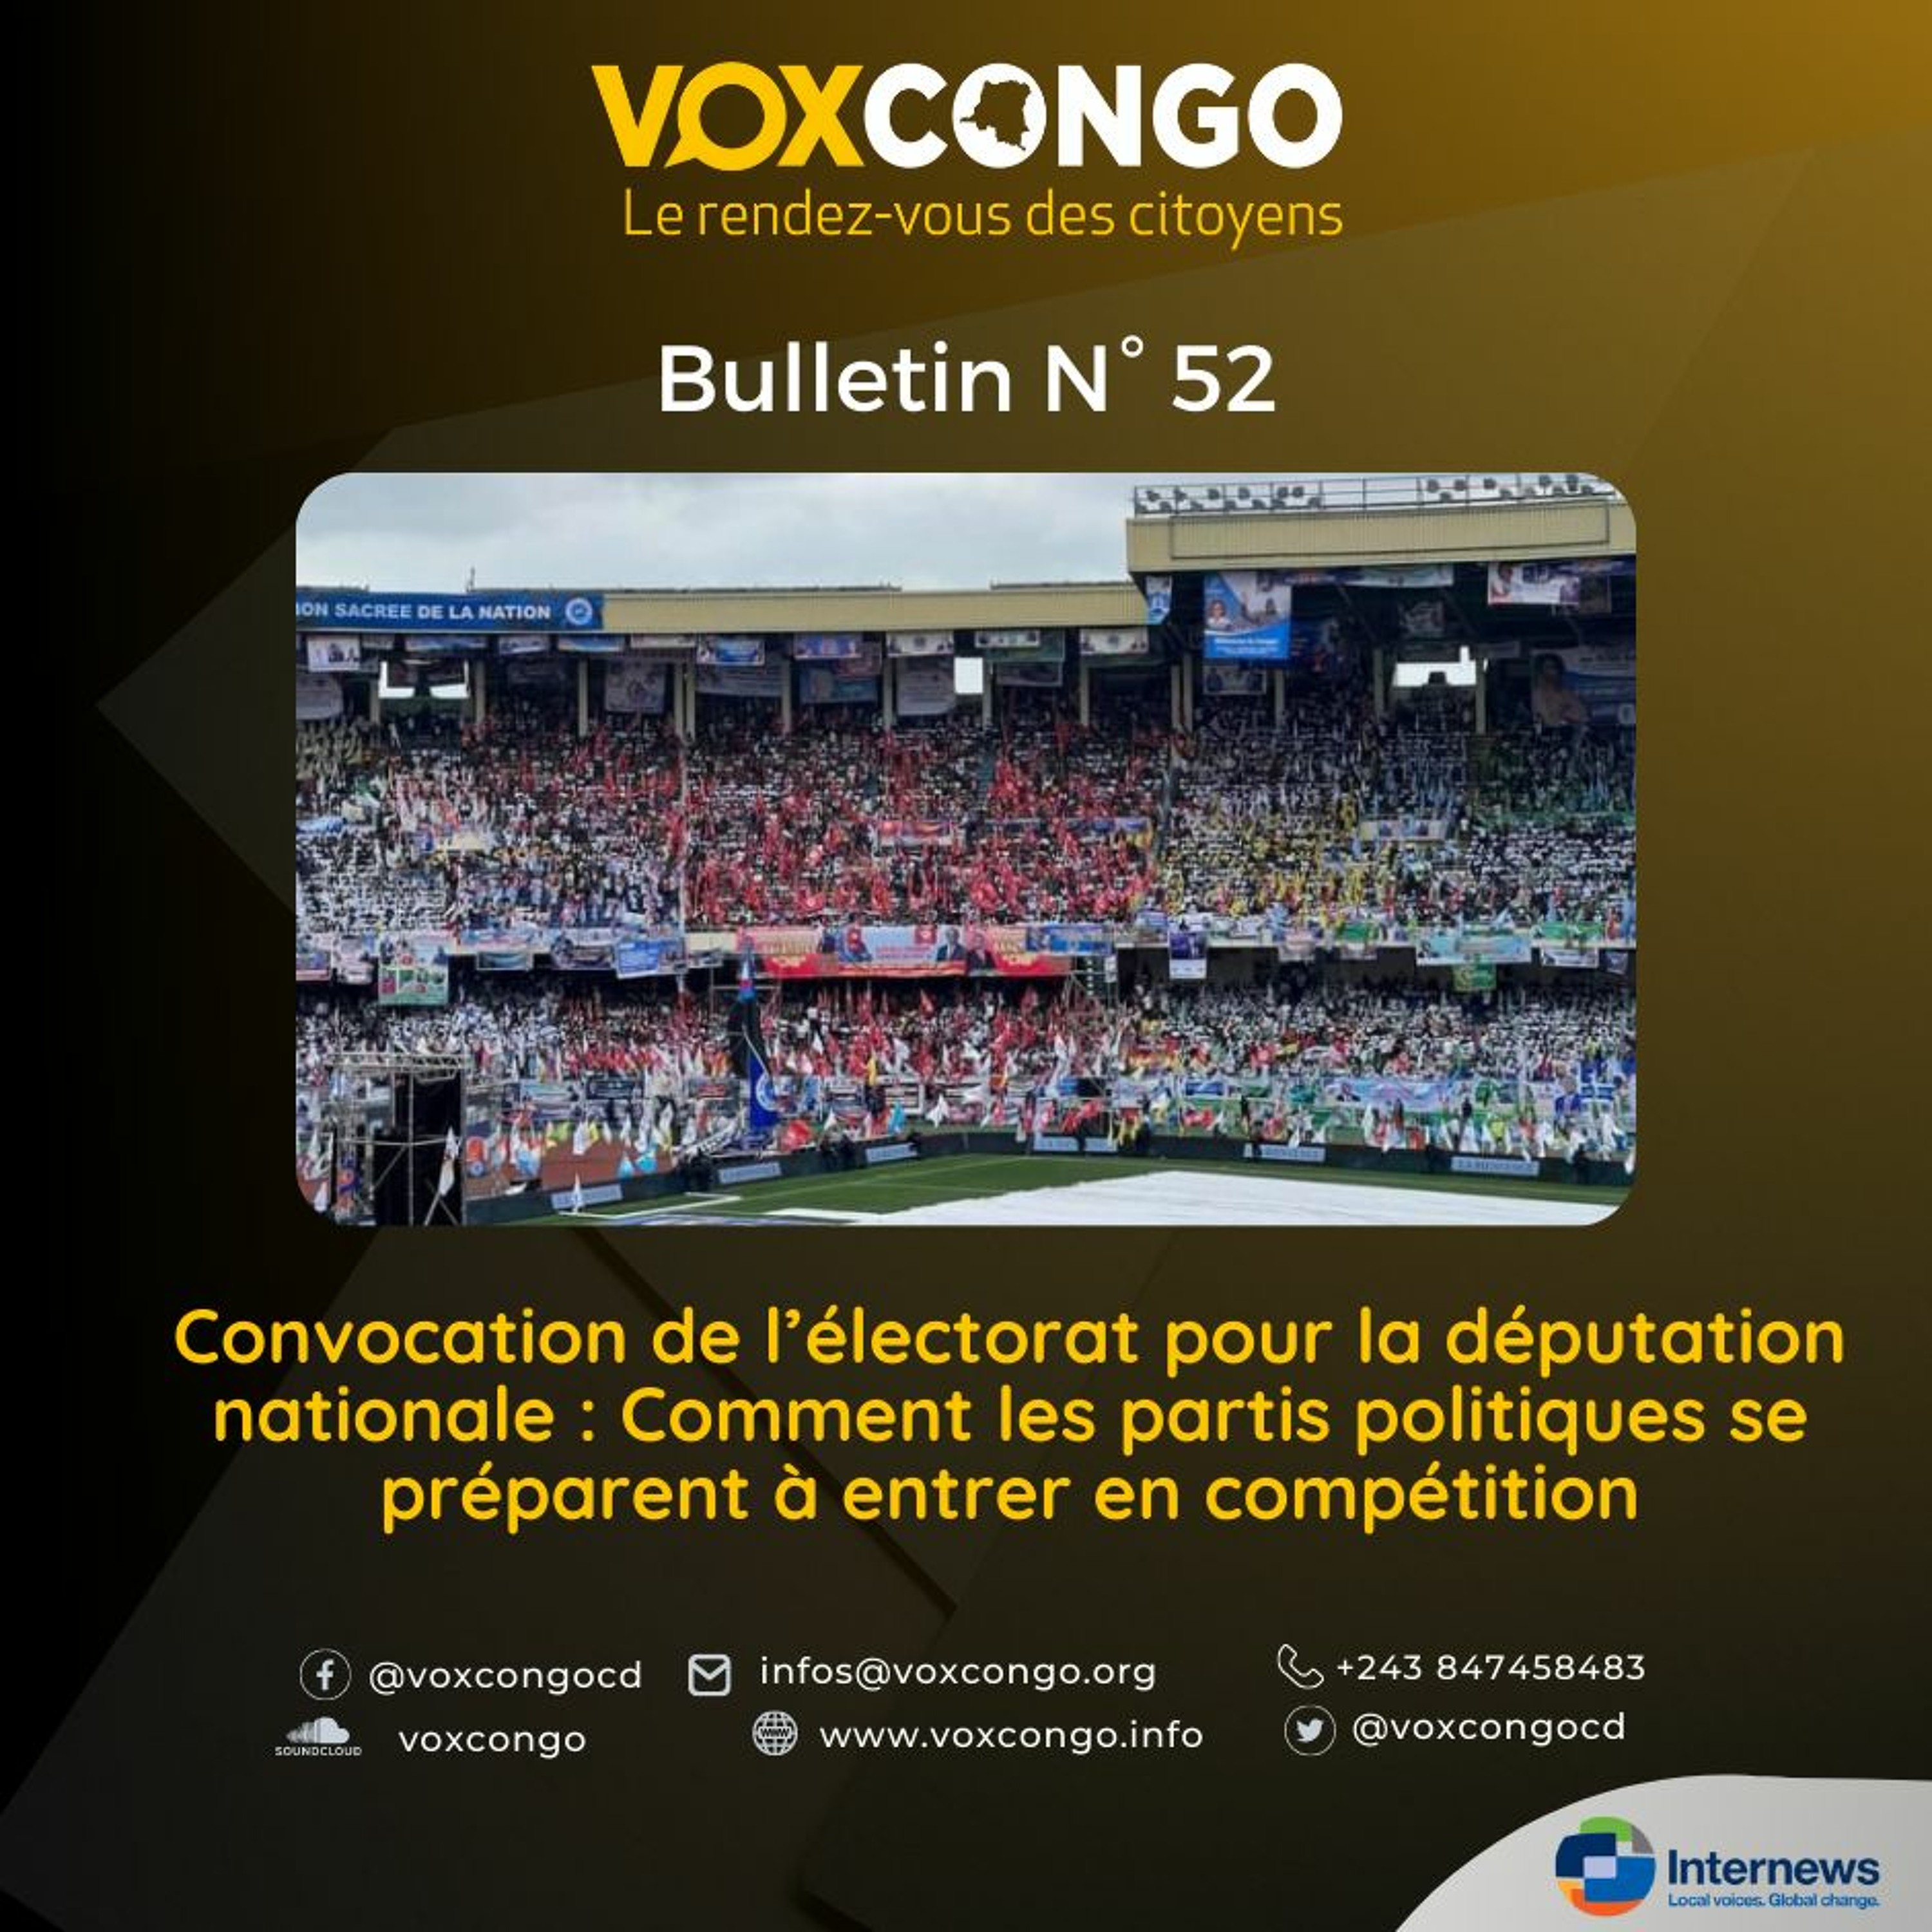 Swahili Katanga Bulletin Voxcongo Convocation De L’électorat Pour La Députation Nationale…